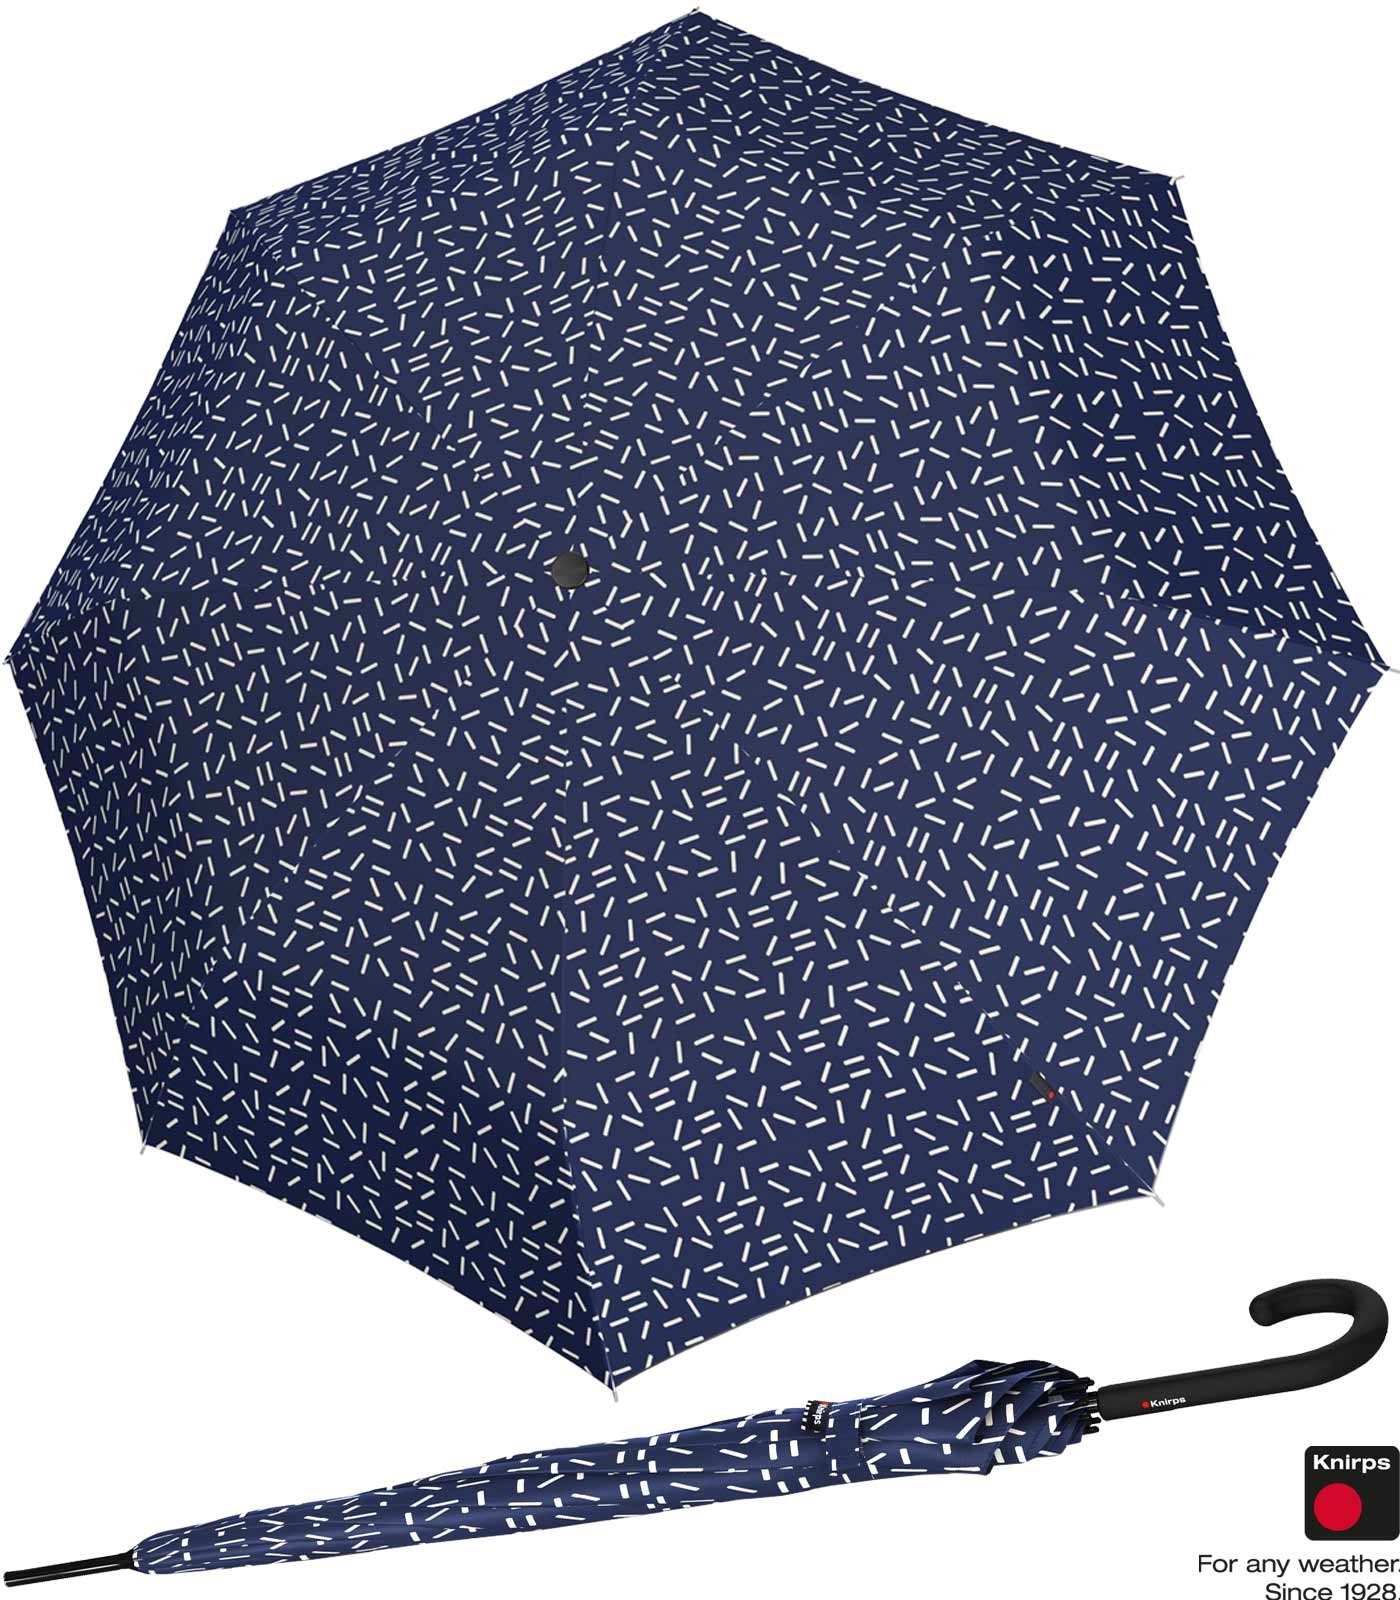 Knirps® Langregenschirm Damen A.760 Auf-Automatik - 2Dance, groß und stabil blau | Stockschirme